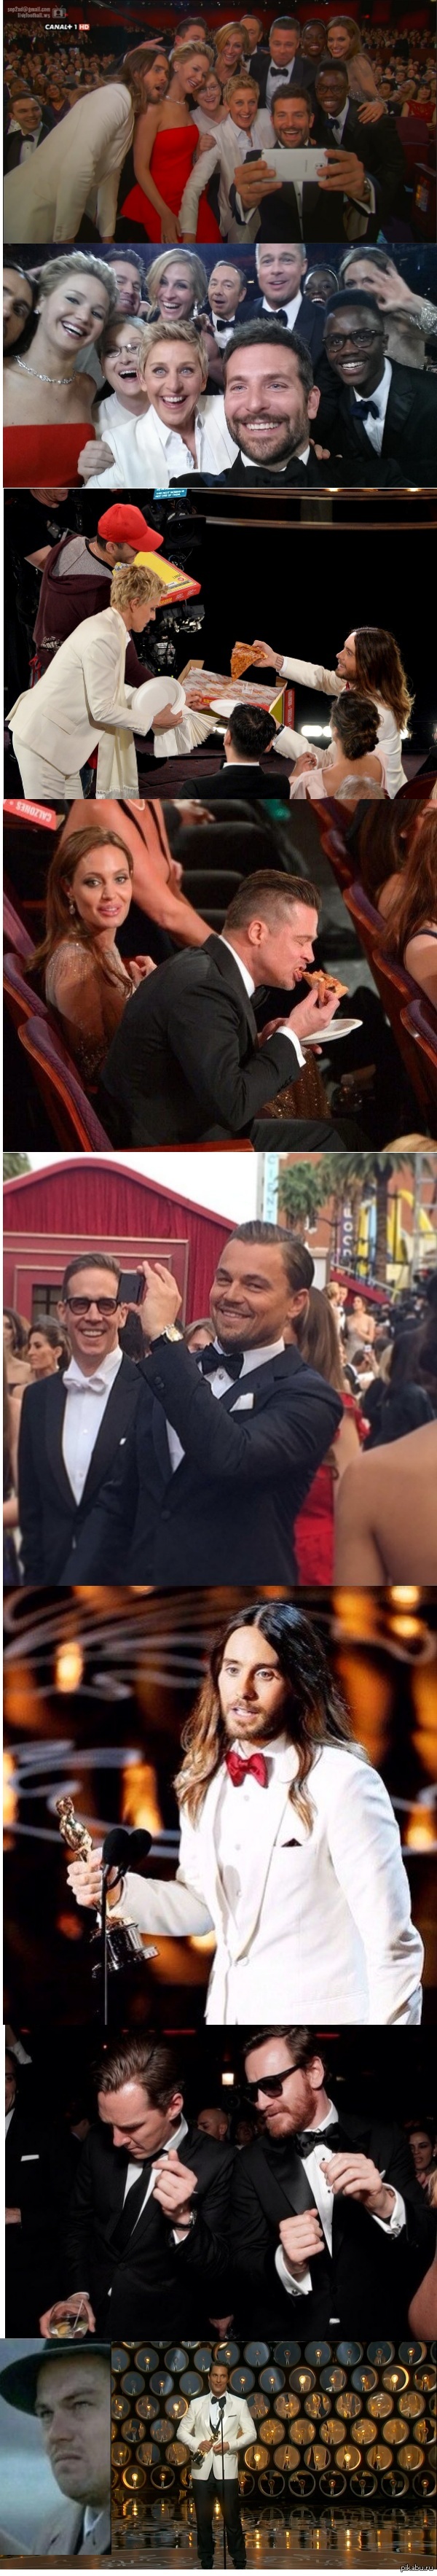 86th Academy Awards Oscars 2014  